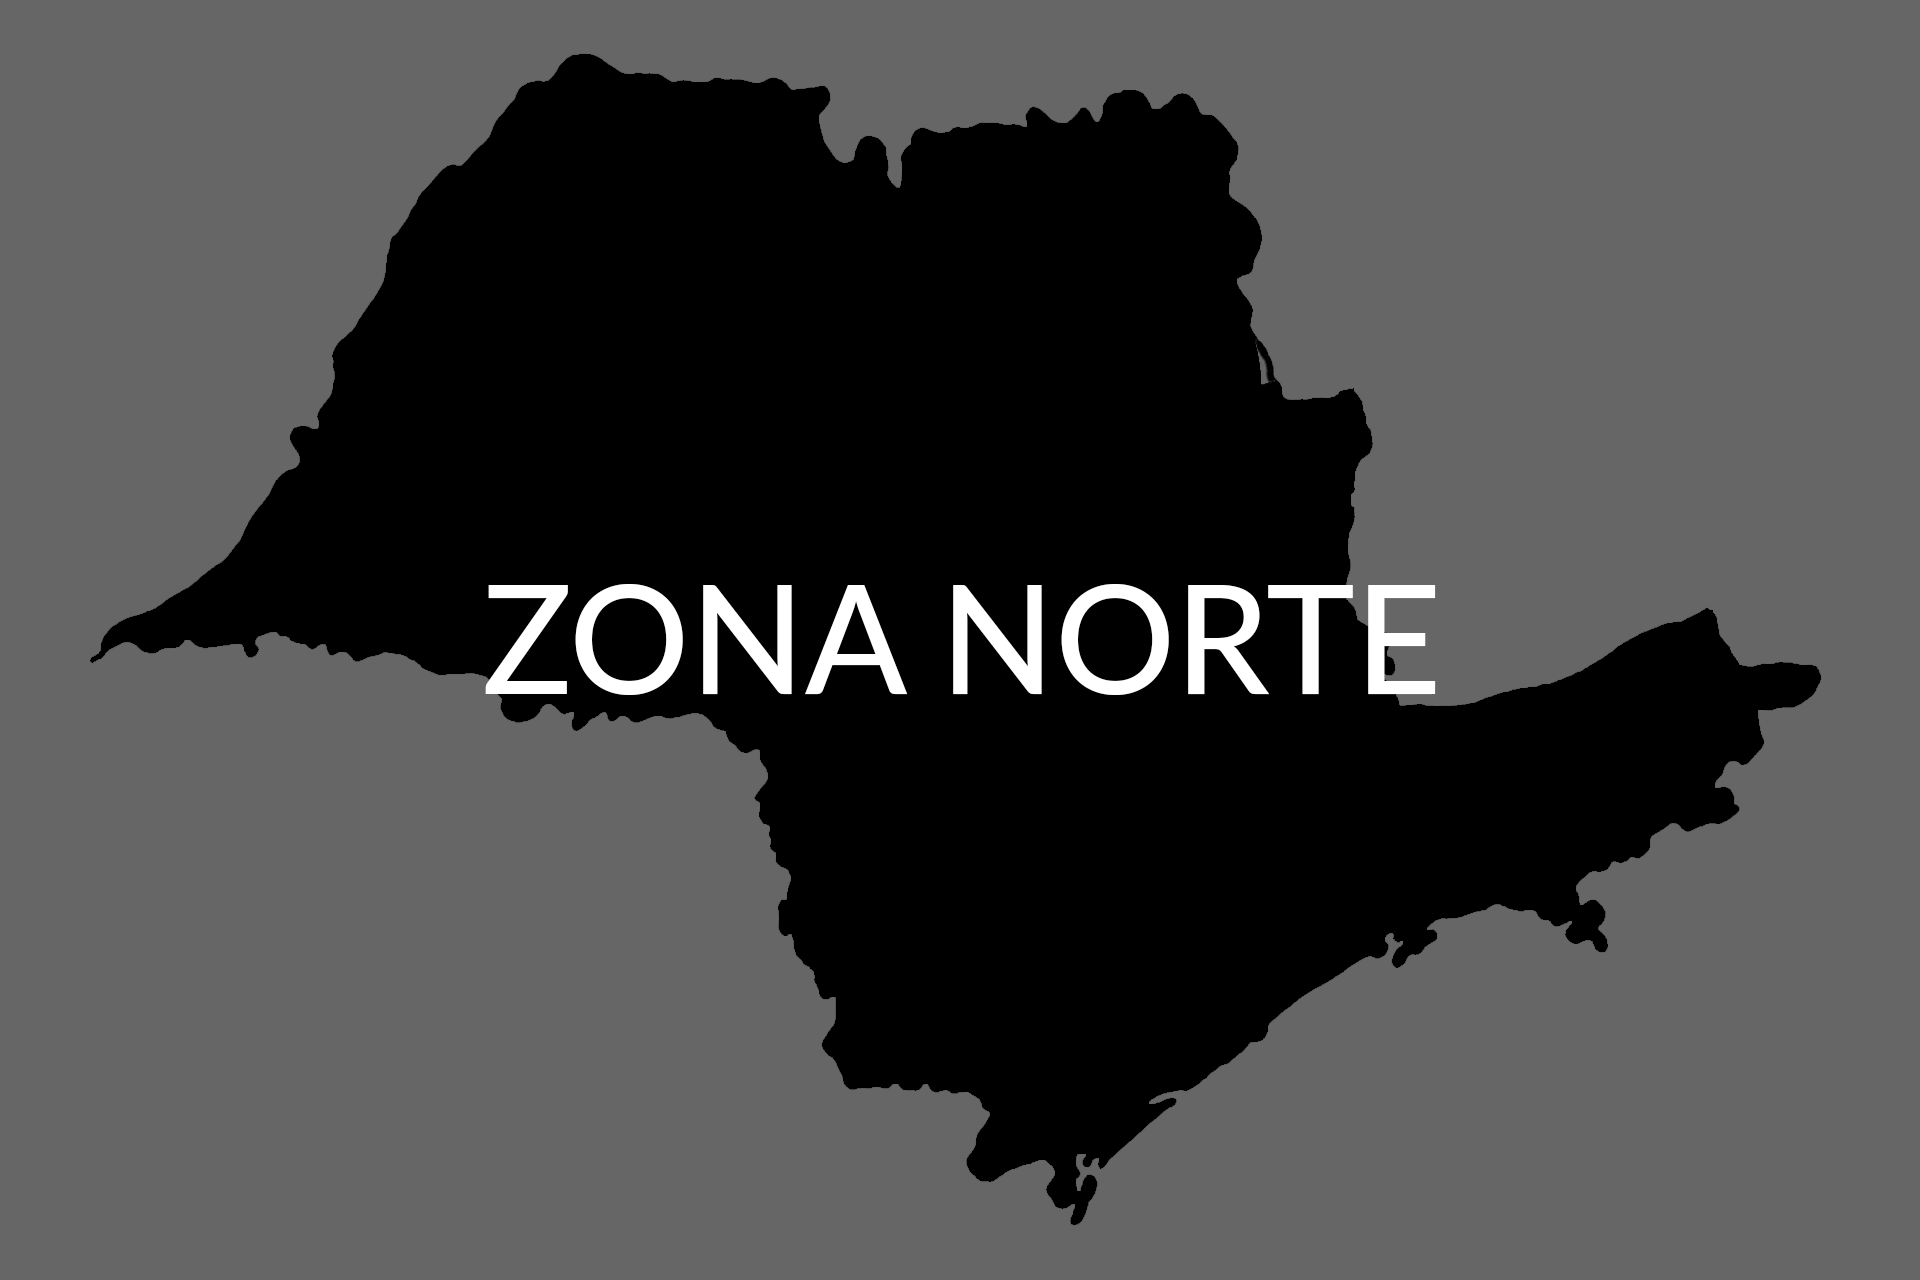 ZONA NORTE